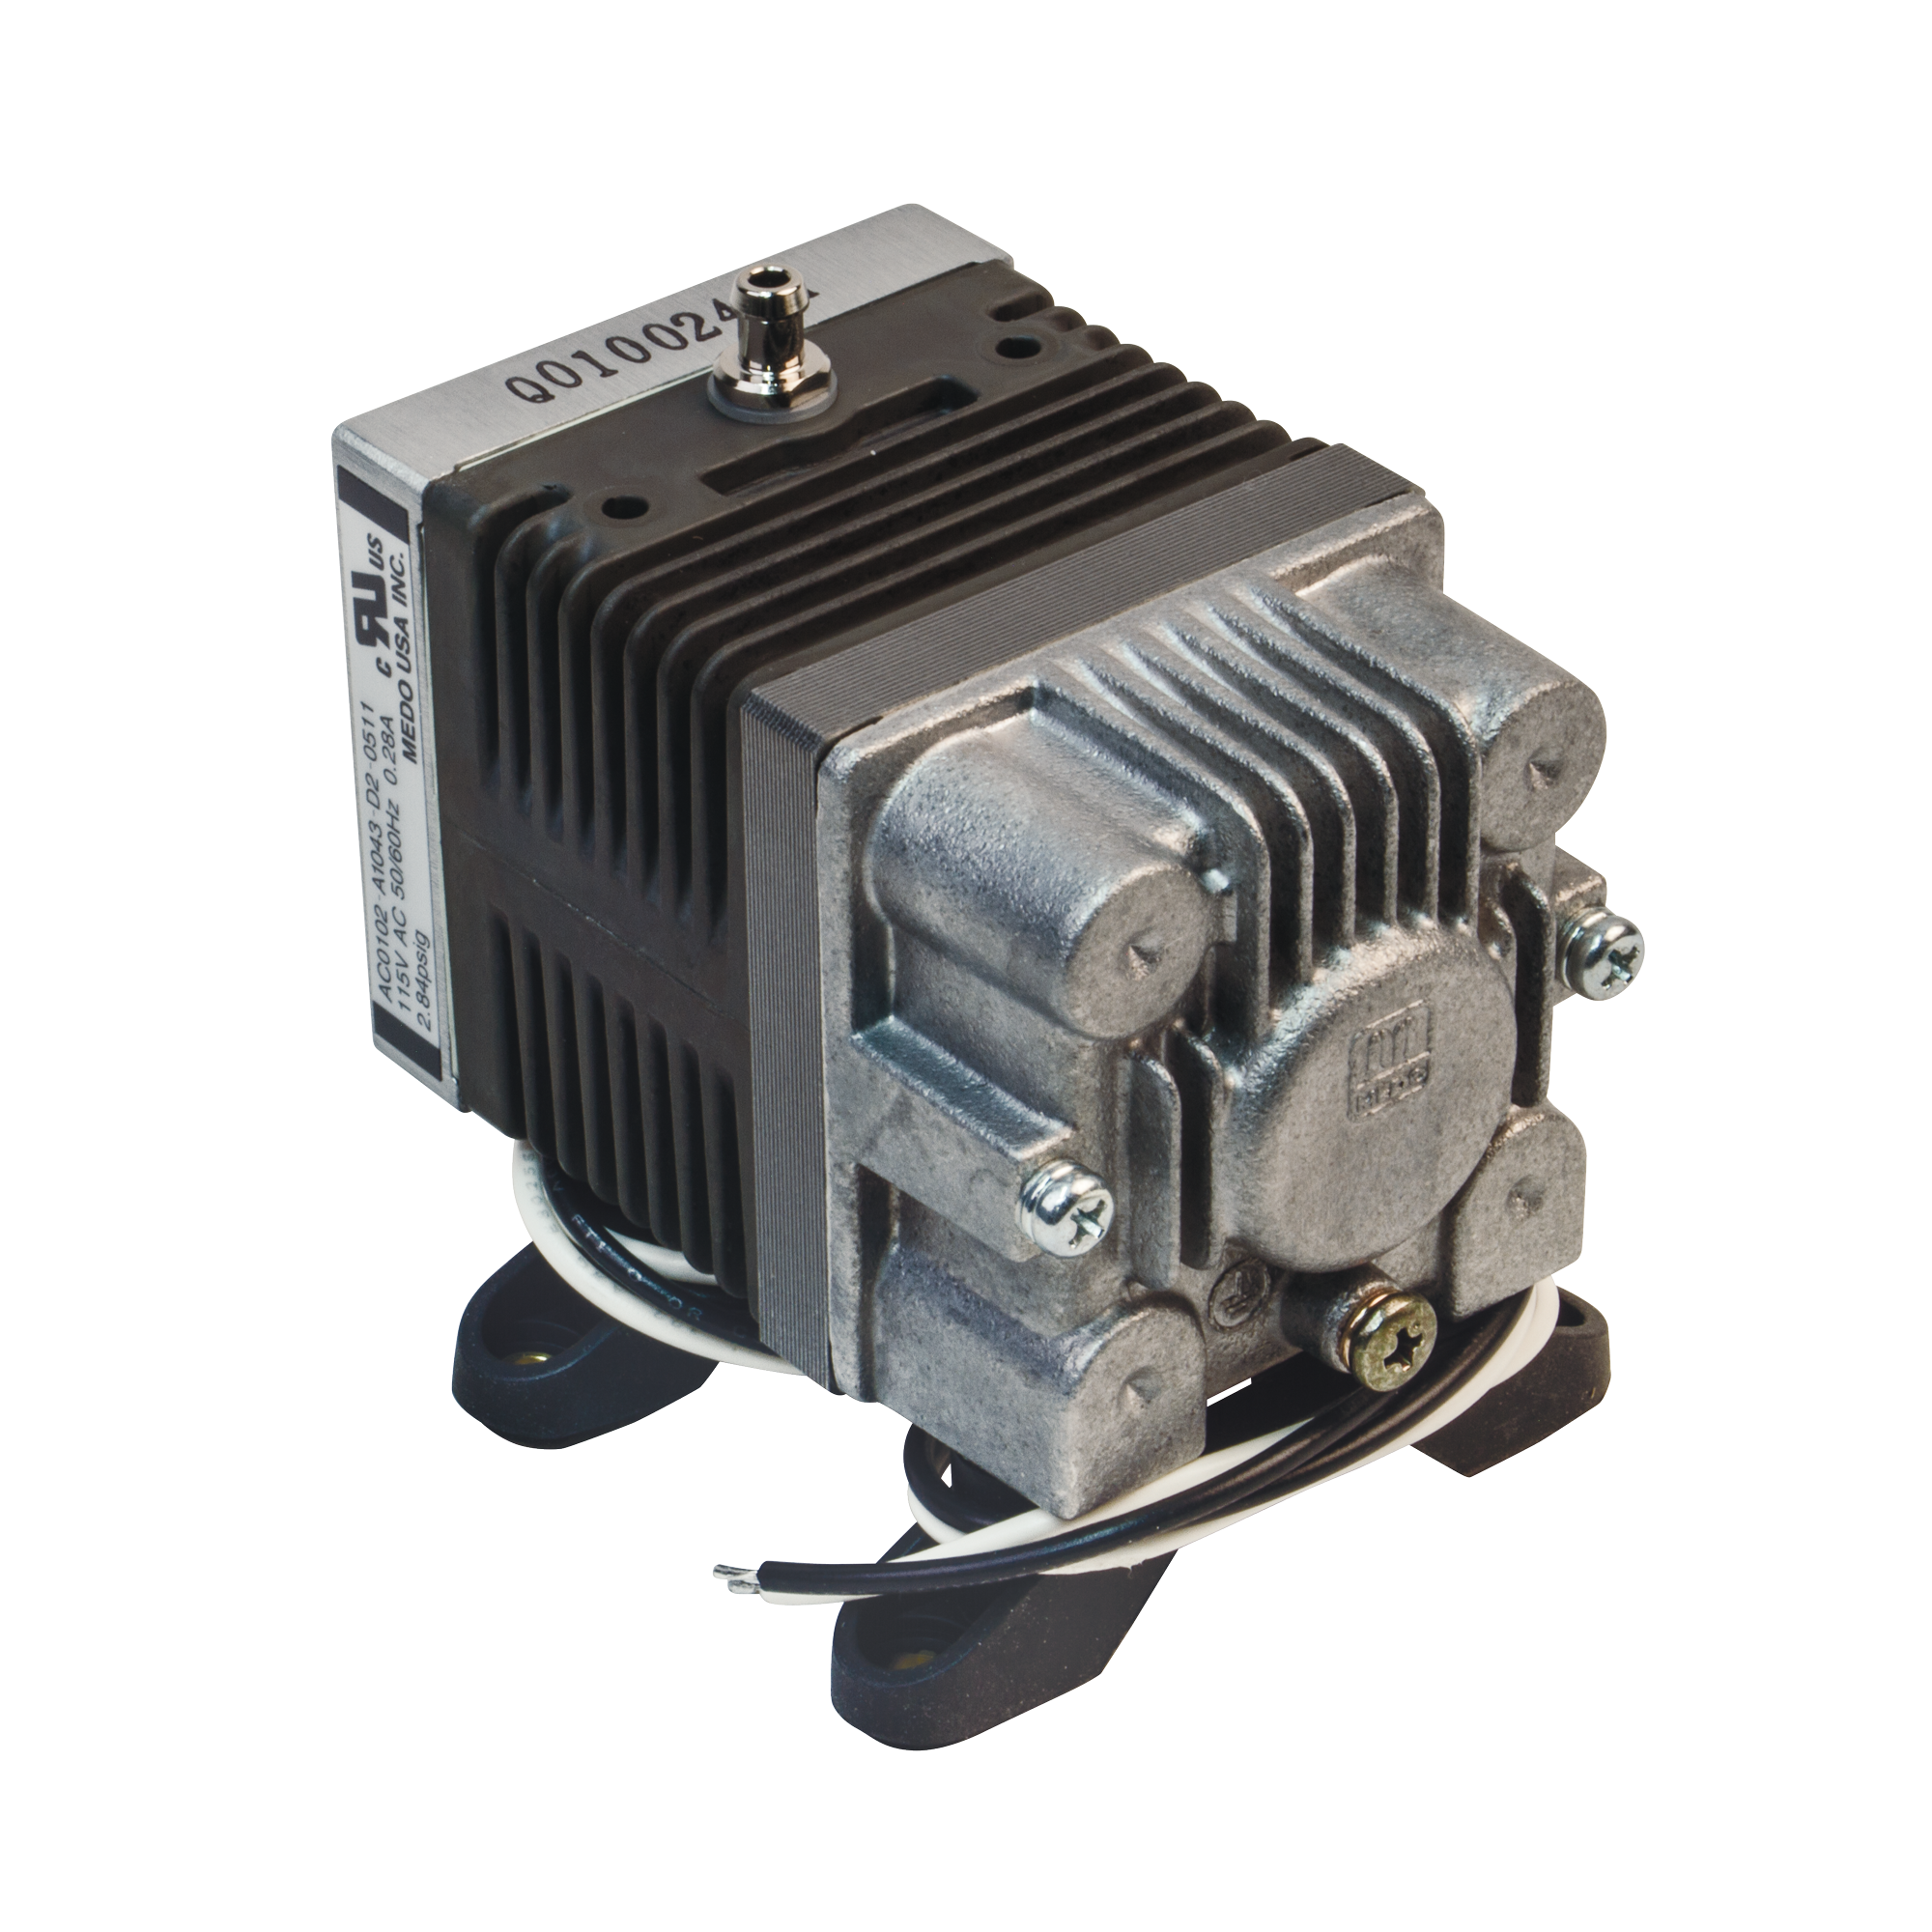 Air Compressor Repair Kit for Statim Autoclave